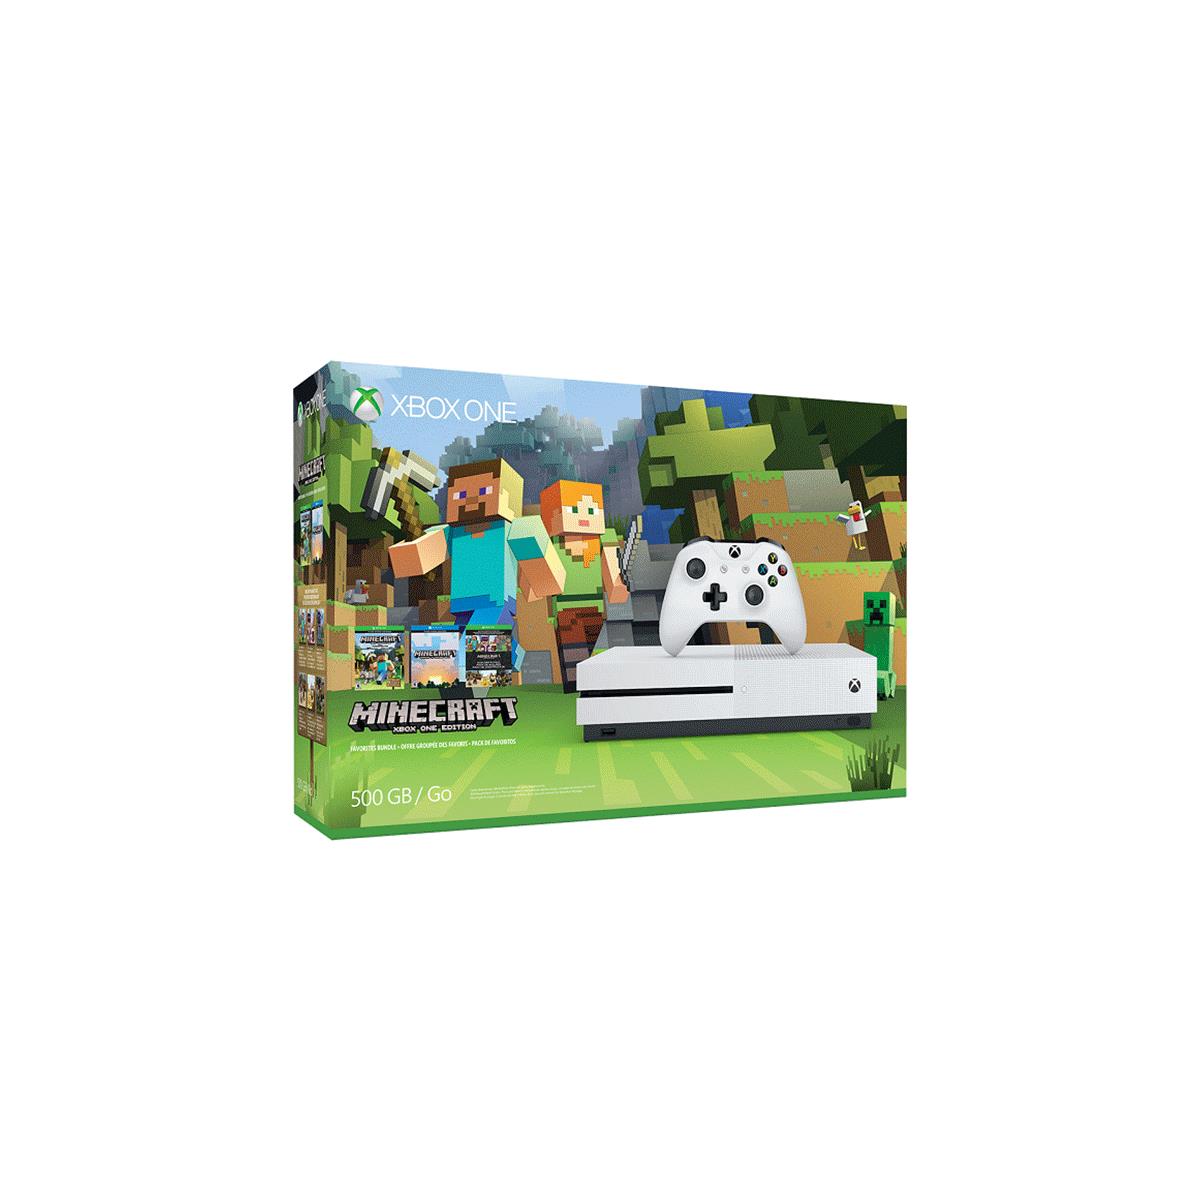 Microsoft XBOX ONE S 500GB Bundle Minecraft